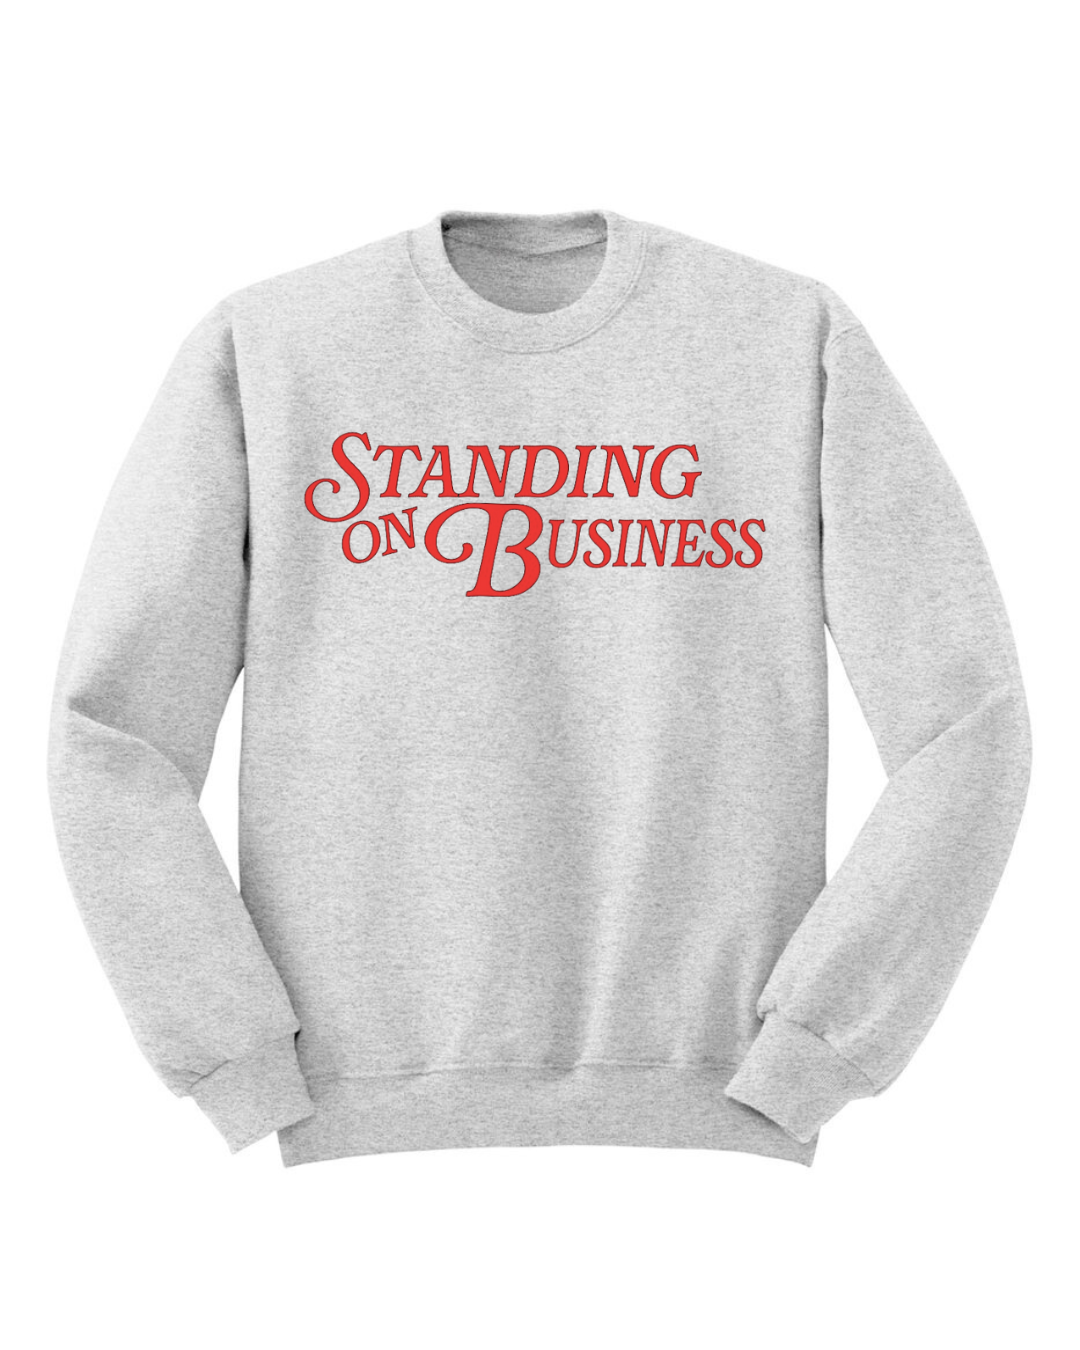 Standing on Business Sweatshirt